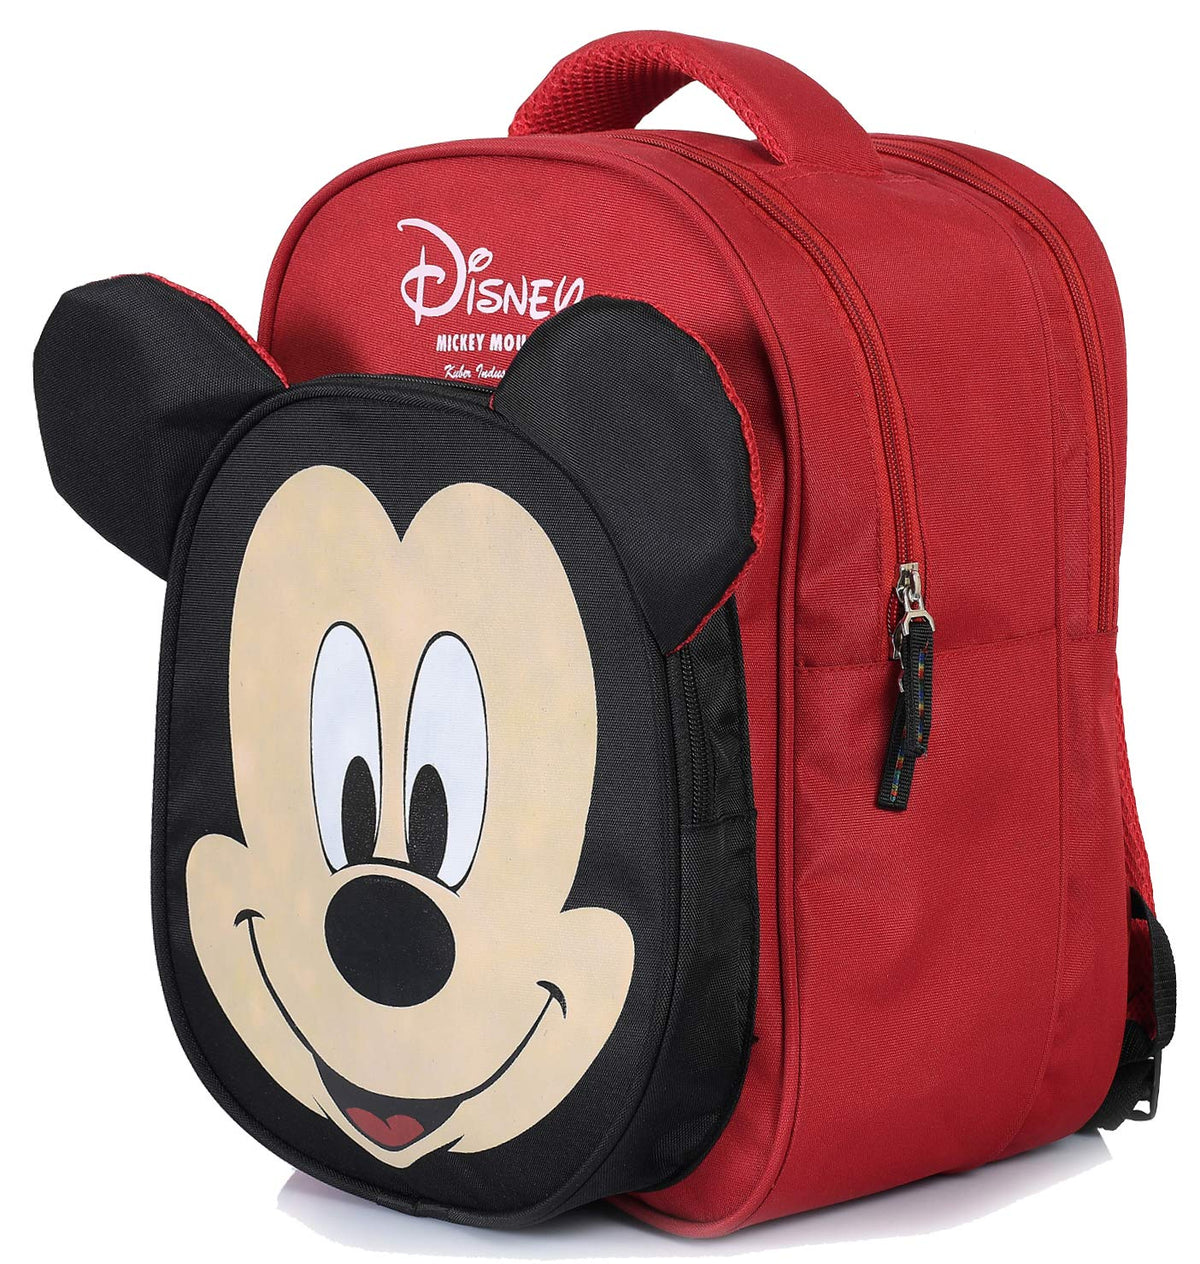 Kuber Industries Disney Print Unisex School Bag|Kids School Backpack|School Bag For Girls, Boys|Disney Mickey Mouse|Red & Black